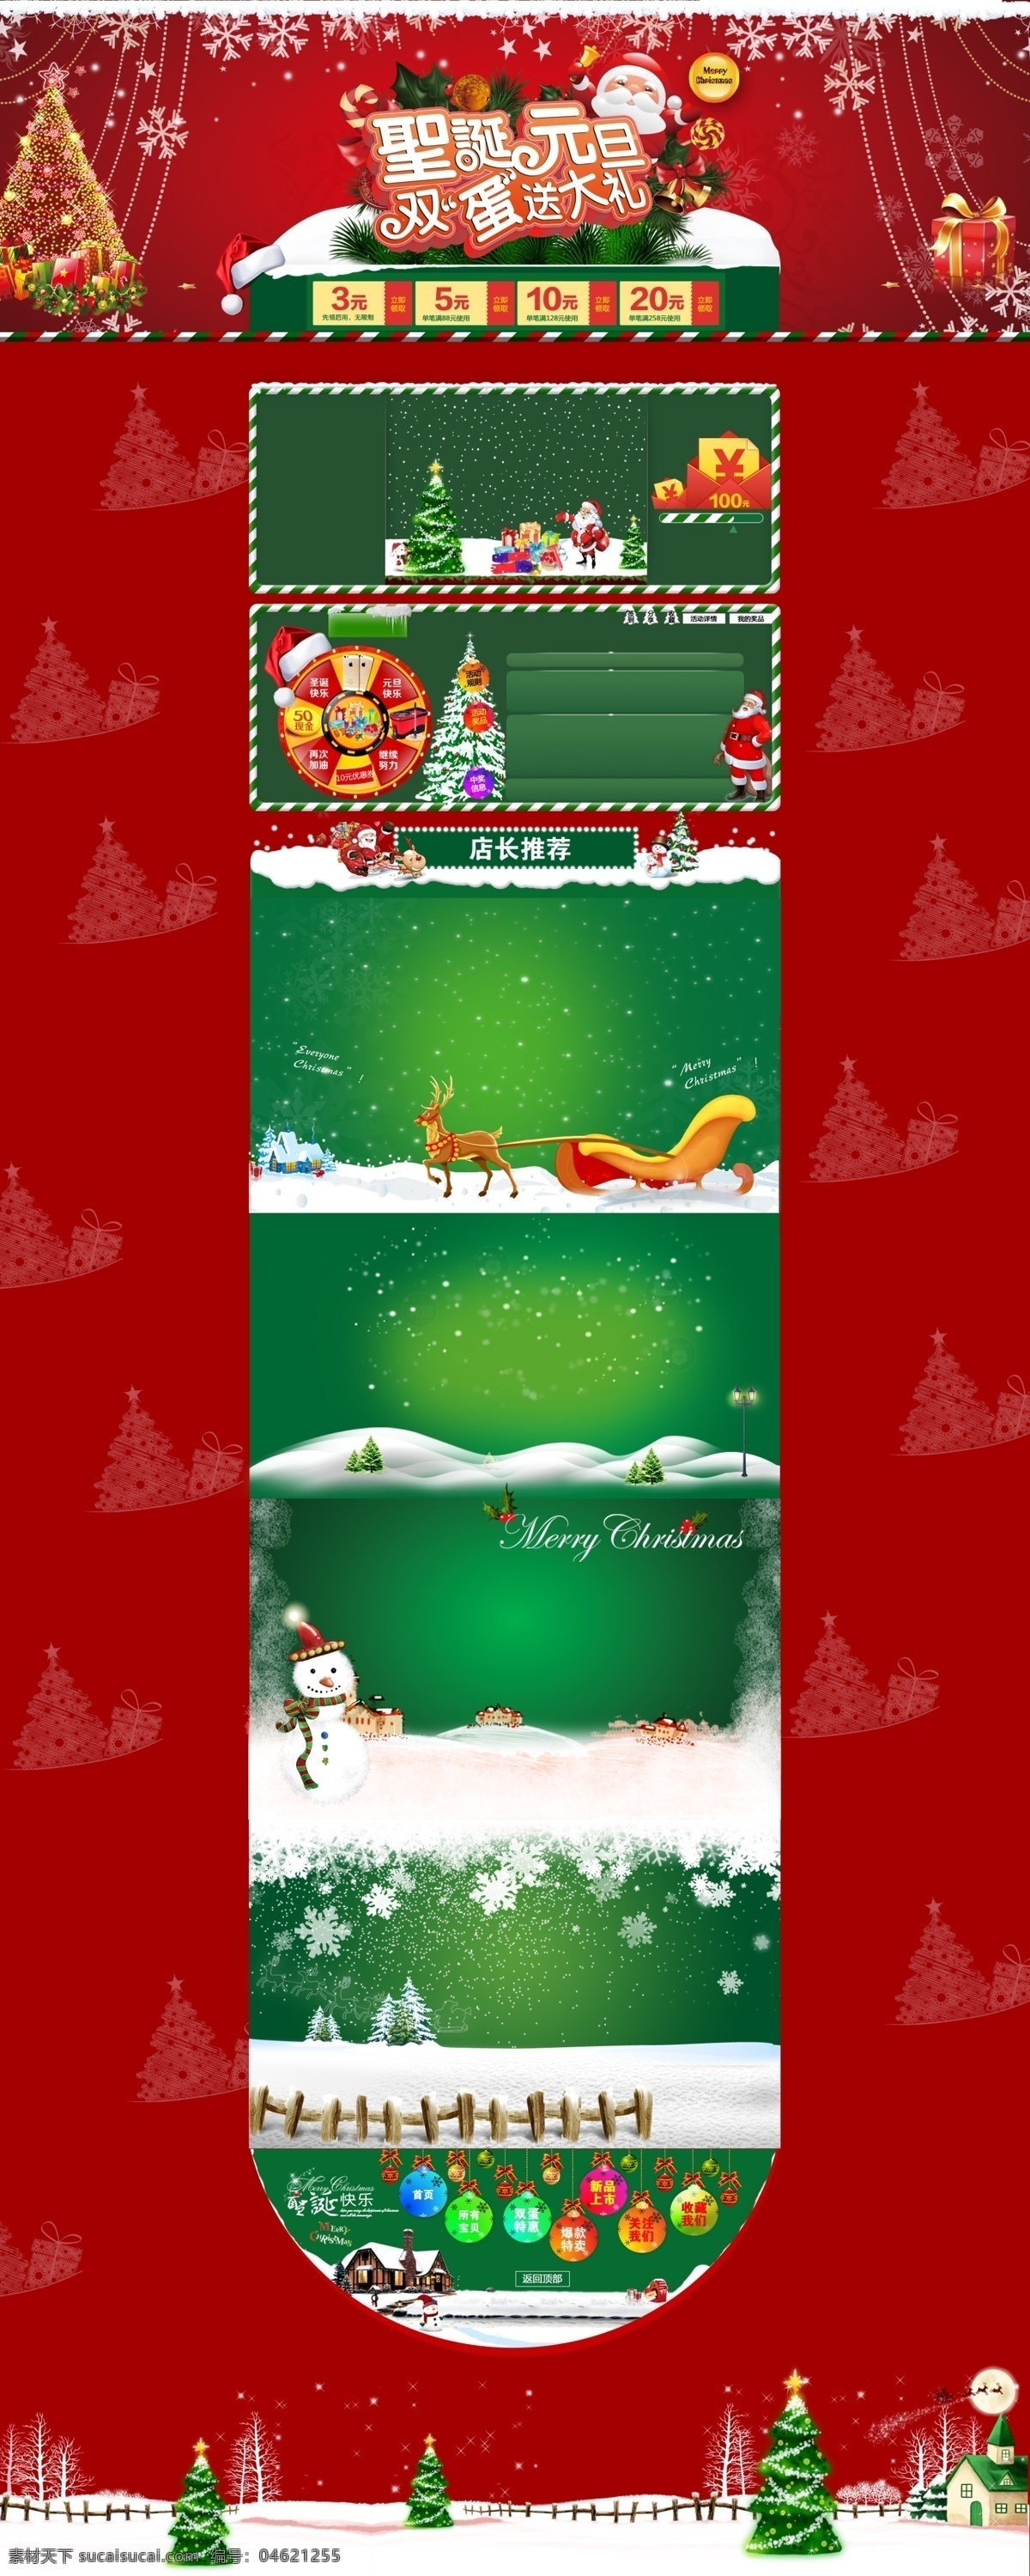 淘宝 天猫 圣诞节 元旦 节 首页 背景 海报 圣诞海报 圣诞狂欢雪花 圣诞狂欢 雪花 元旦海报